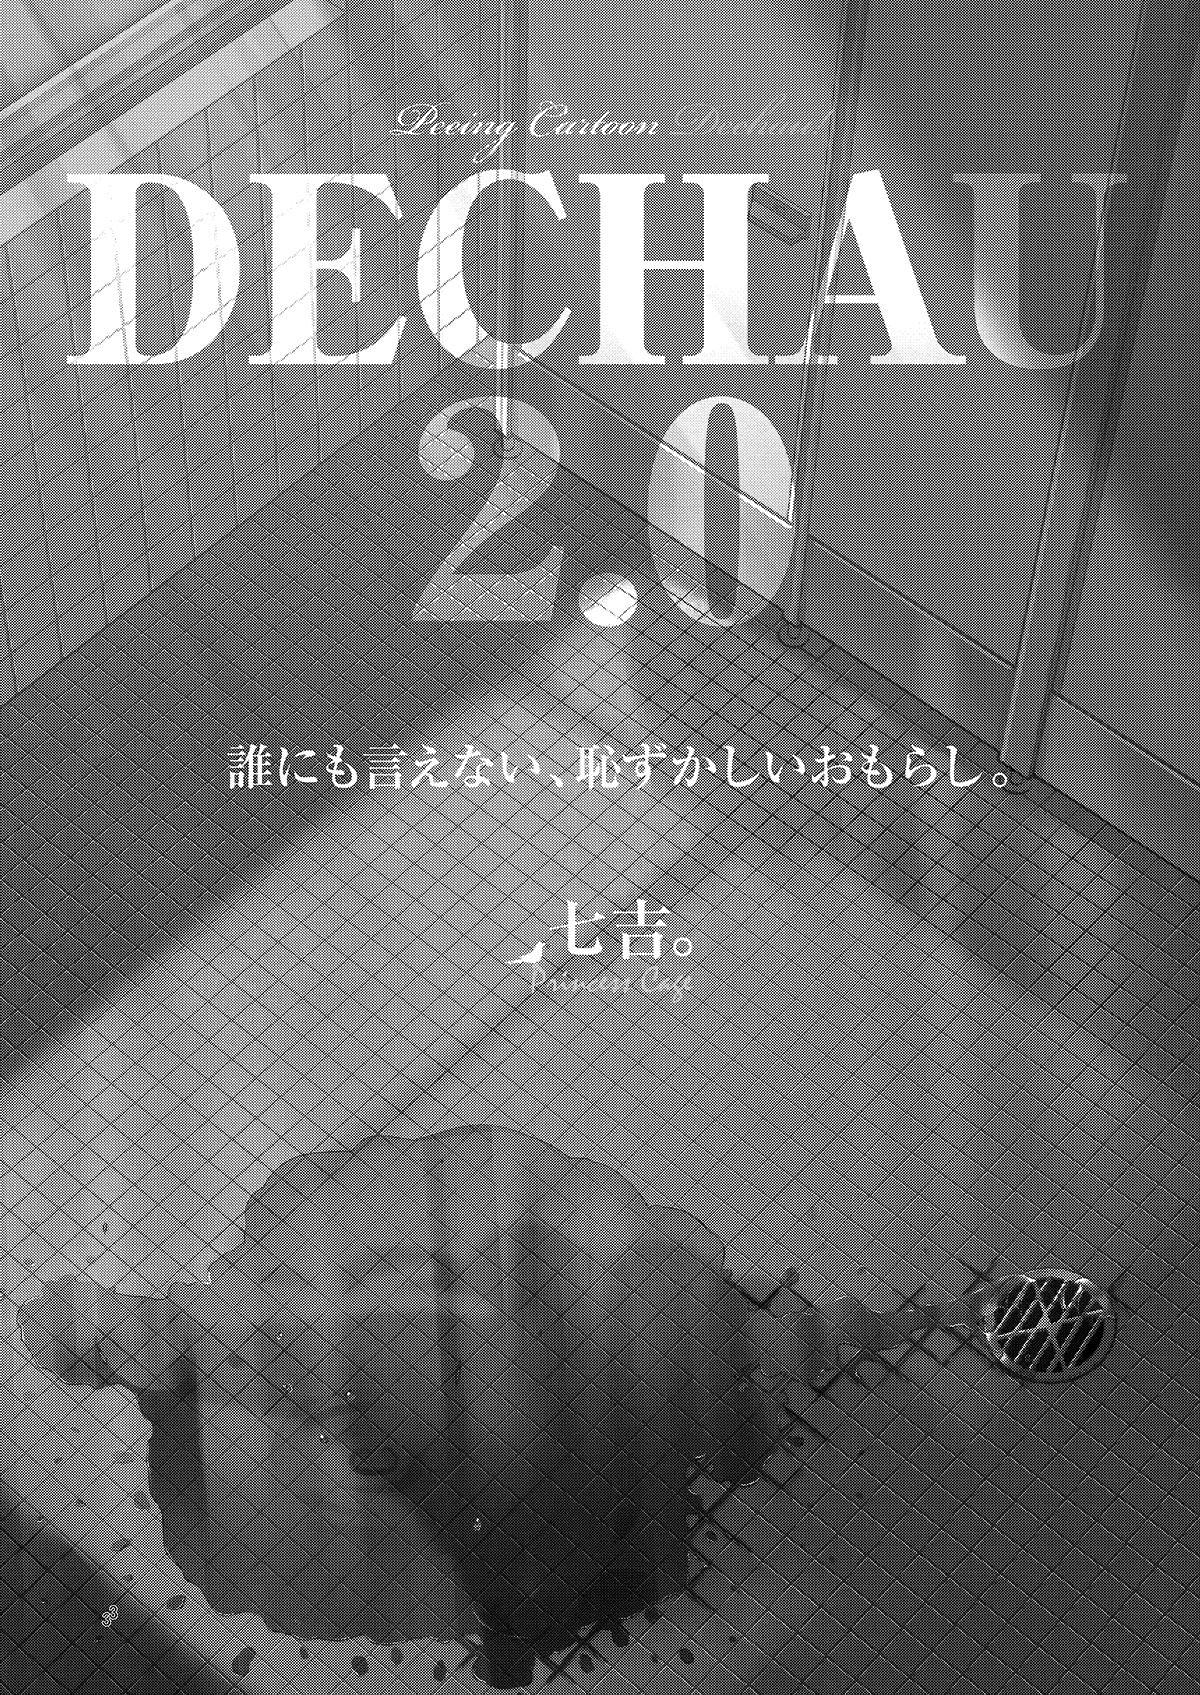 DECHAU 2.0 1